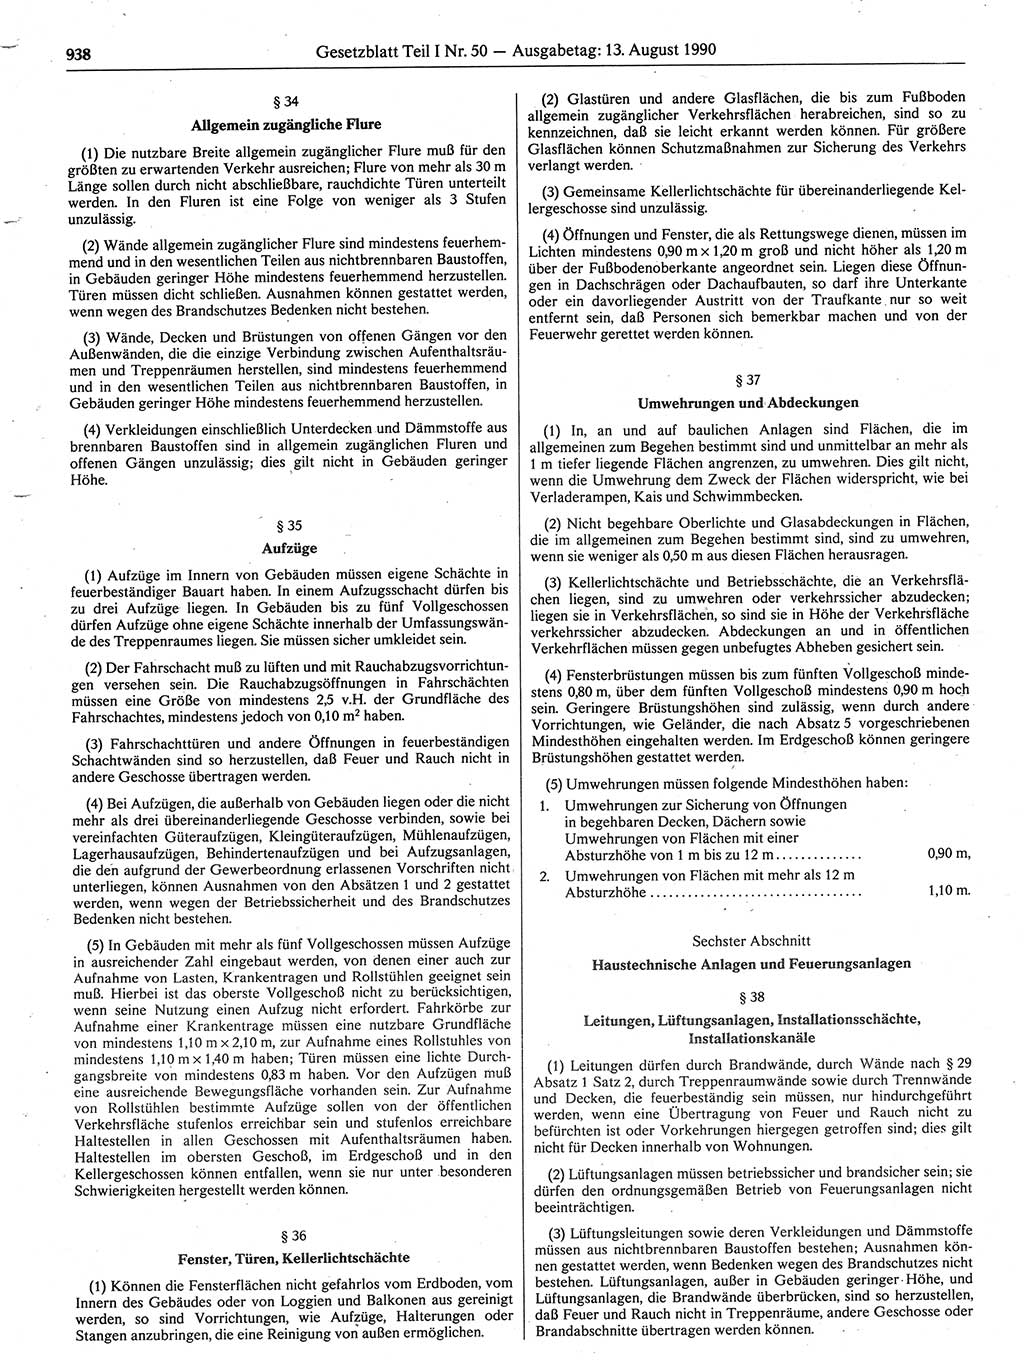 Gesetzblatt (GBl.) der Deutschen Demokratischen Republik (DDR) Teil Ⅰ 1990, Seite 938 (GBl. DDR Ⅰ 1990, S. 938)